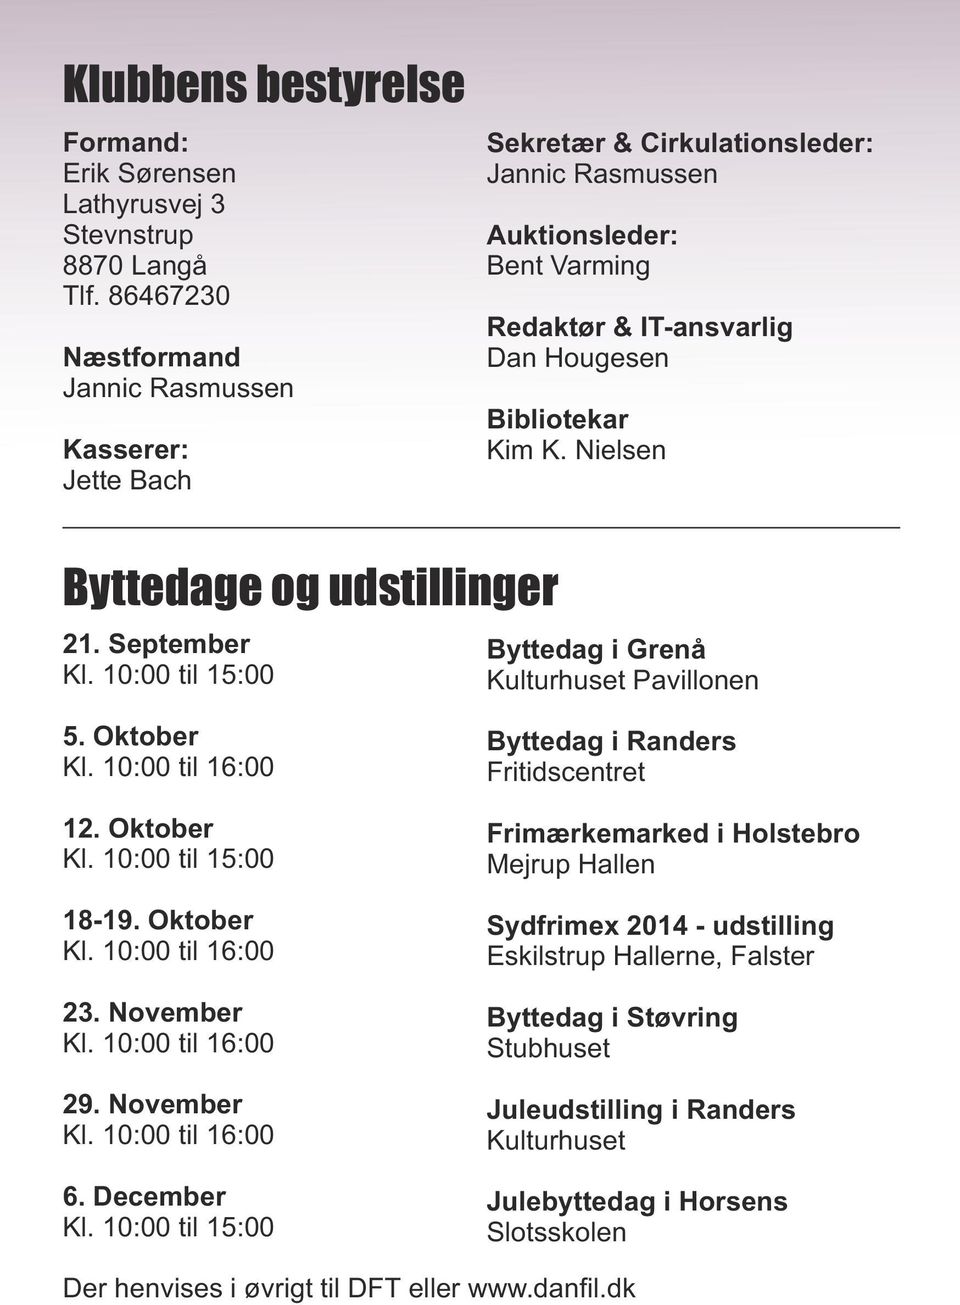 Nielsen Byttedage og udstillinger 21. September Kl. 10:00 til 15:00 Byttedag i Grenå Kulturhuset Pavillonen 5. Oktober Kl. 10:00 til 16:00 12. Oktober Kl. 10:00 til 15:00 18-19. Oktober Kl. 10:00 til 16:00 23.